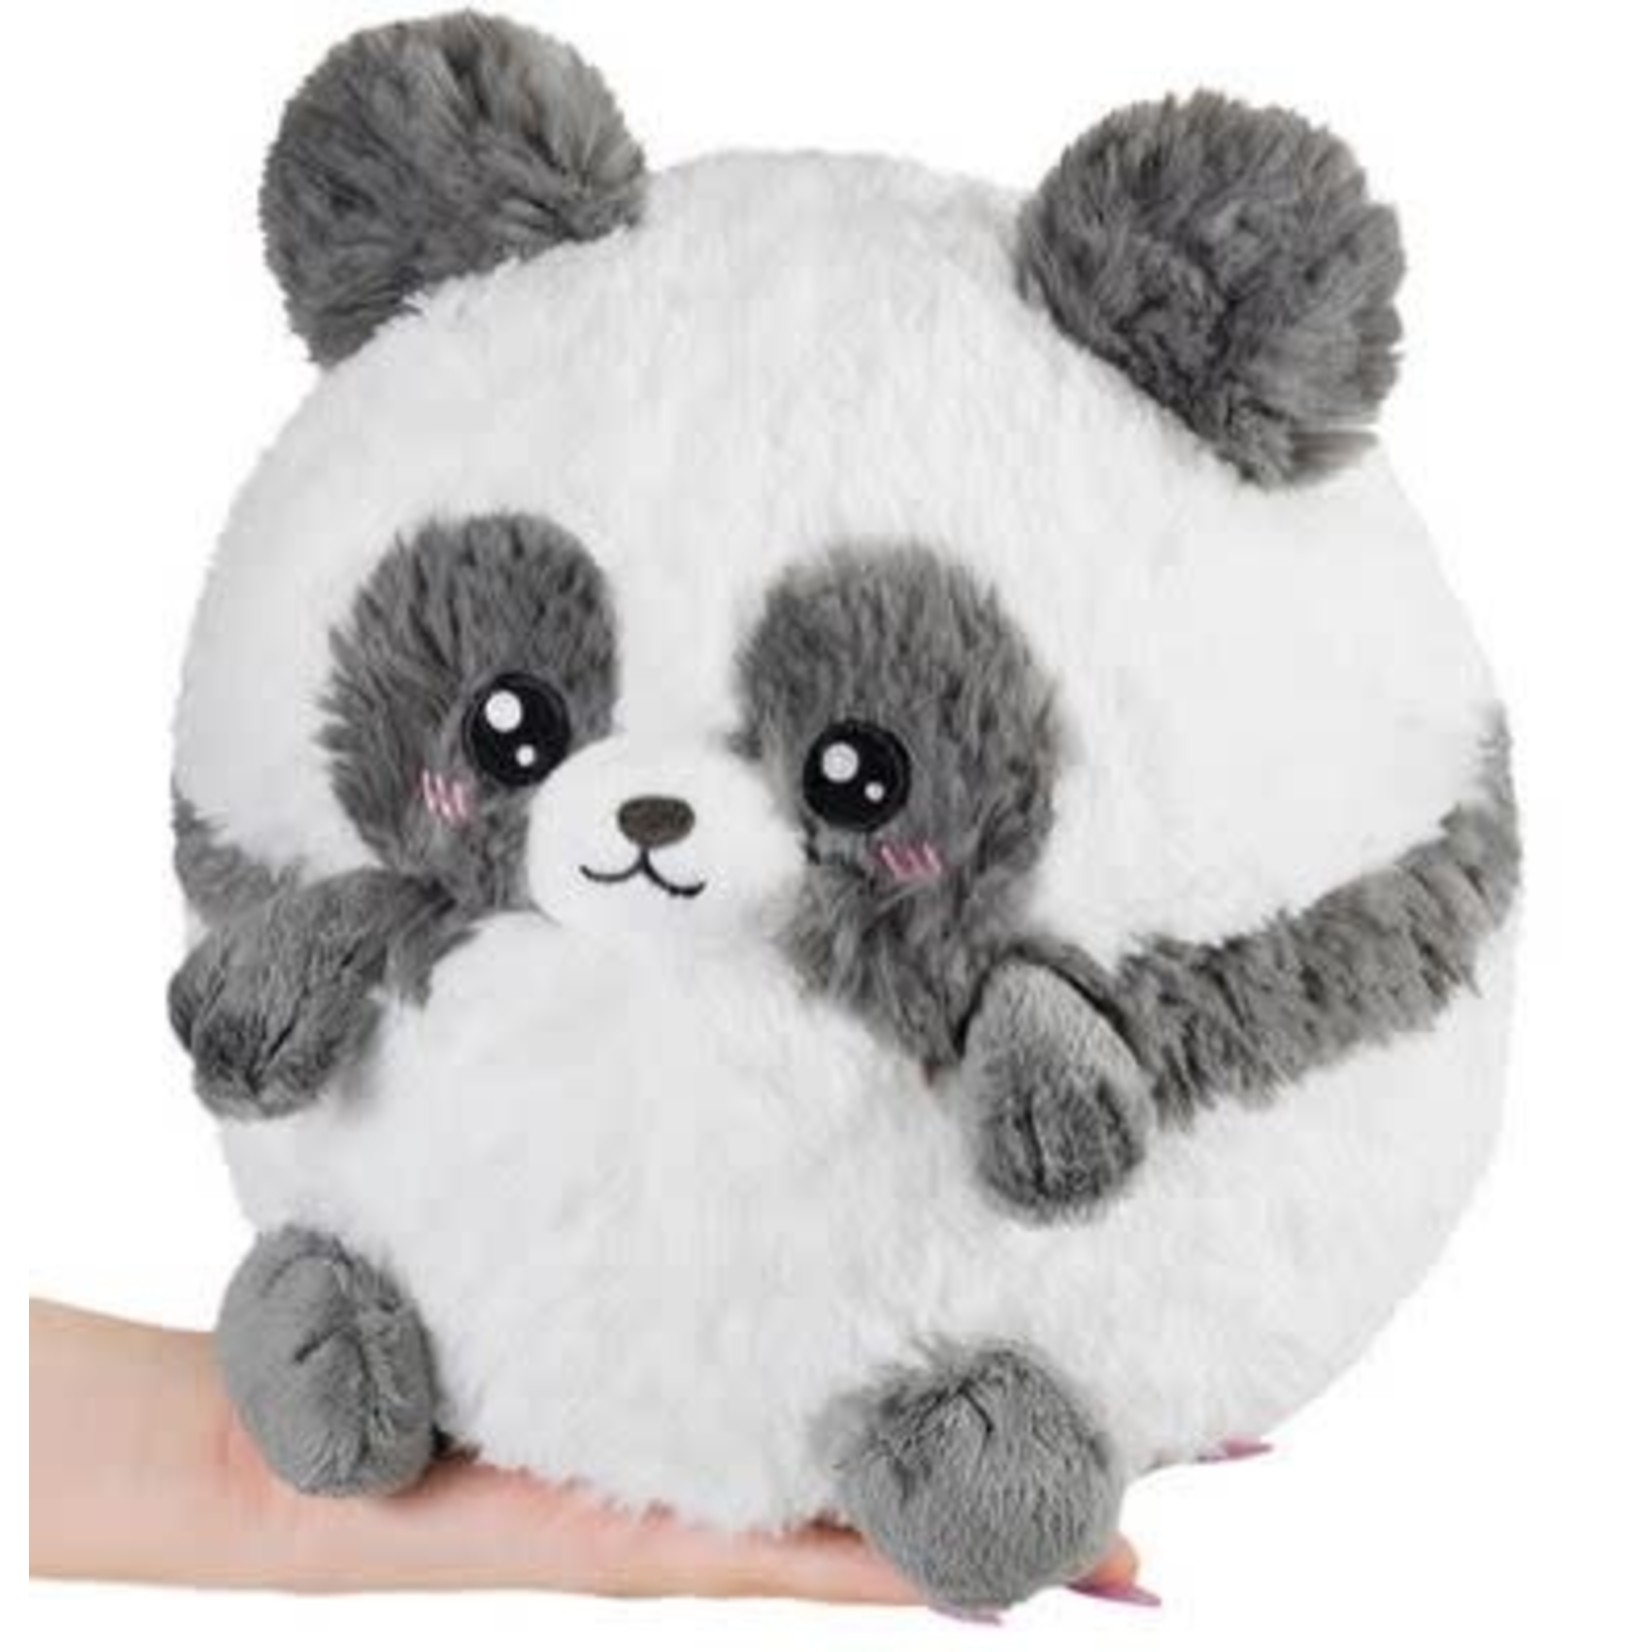 Squishable Mini: Baby Panda III